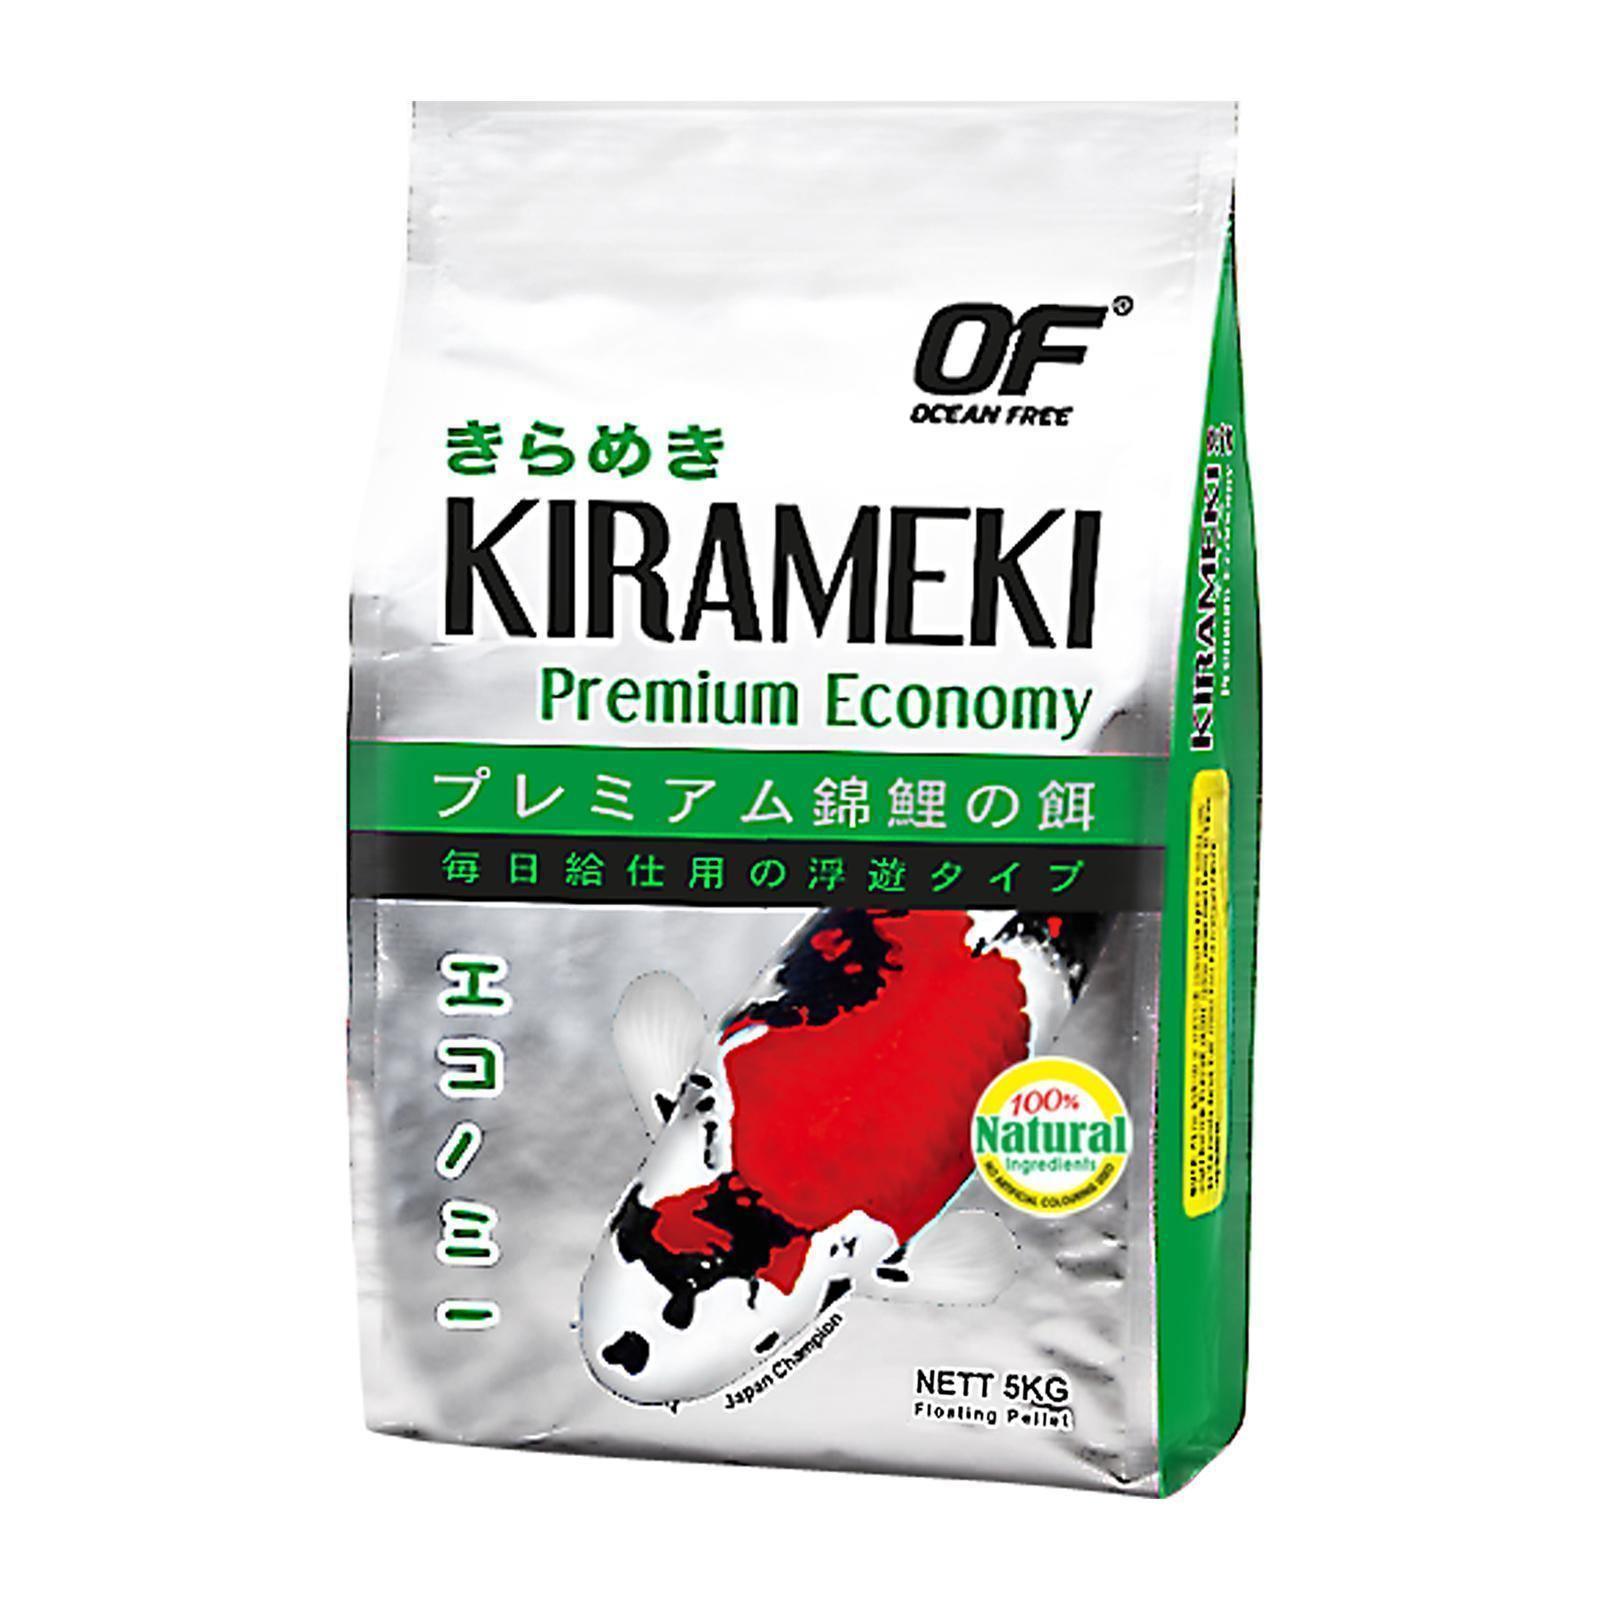 Ocean Free Kirameki Premium Economy Koi Medium 5Kg